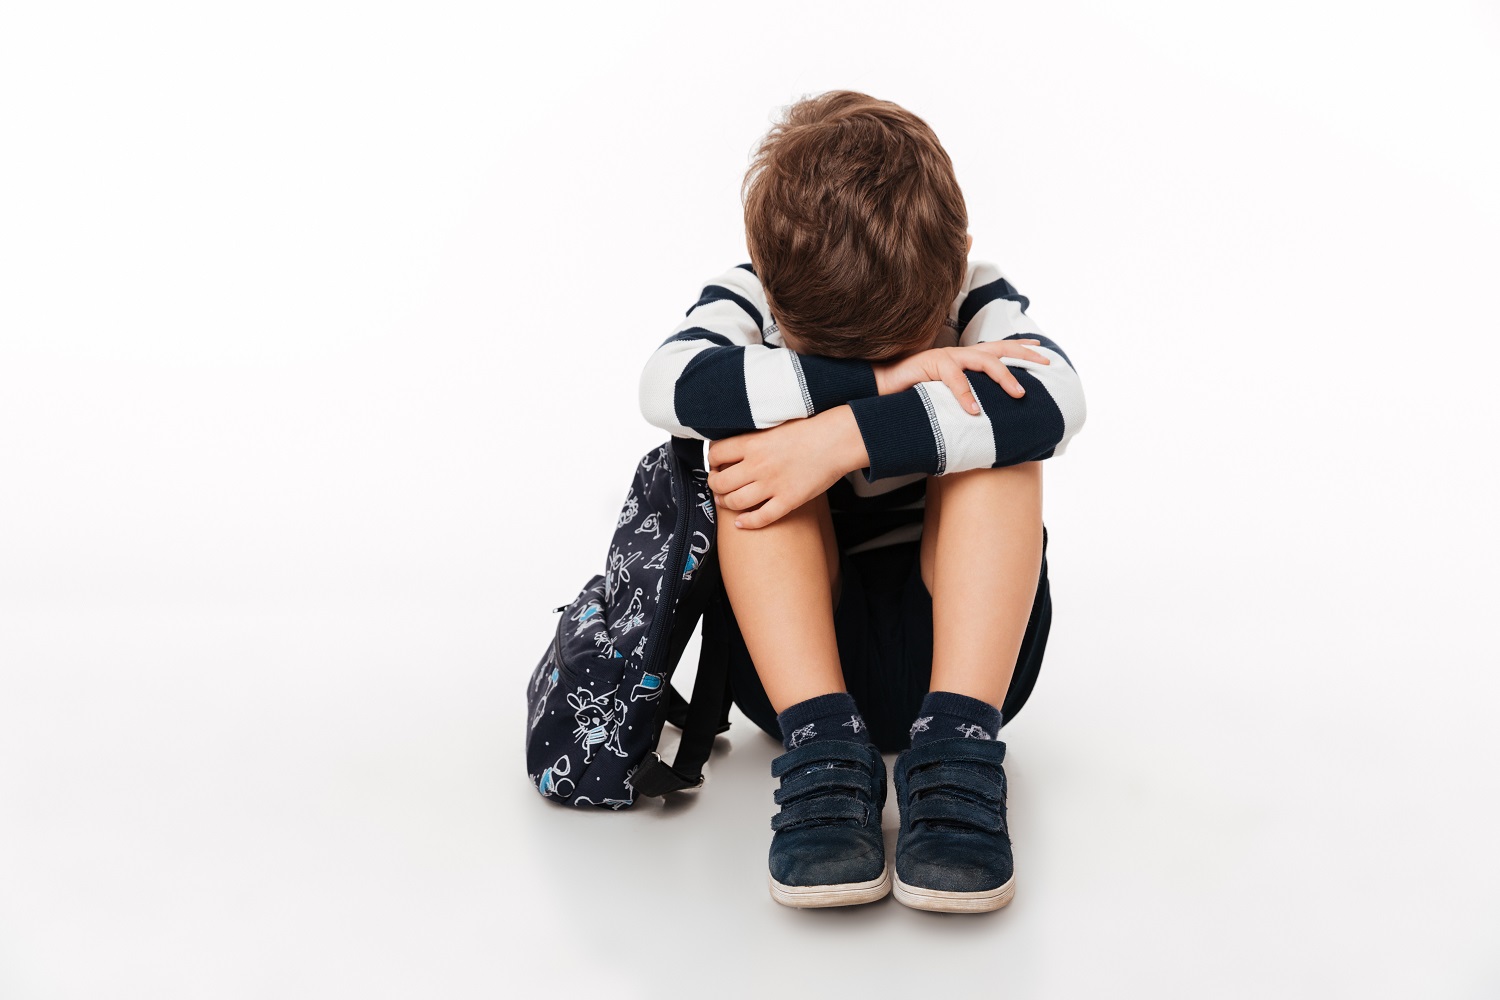 Psichologinis smurtas prieš vaikus: kaip pastebėti ir įrodyti tai, kas nematoma?